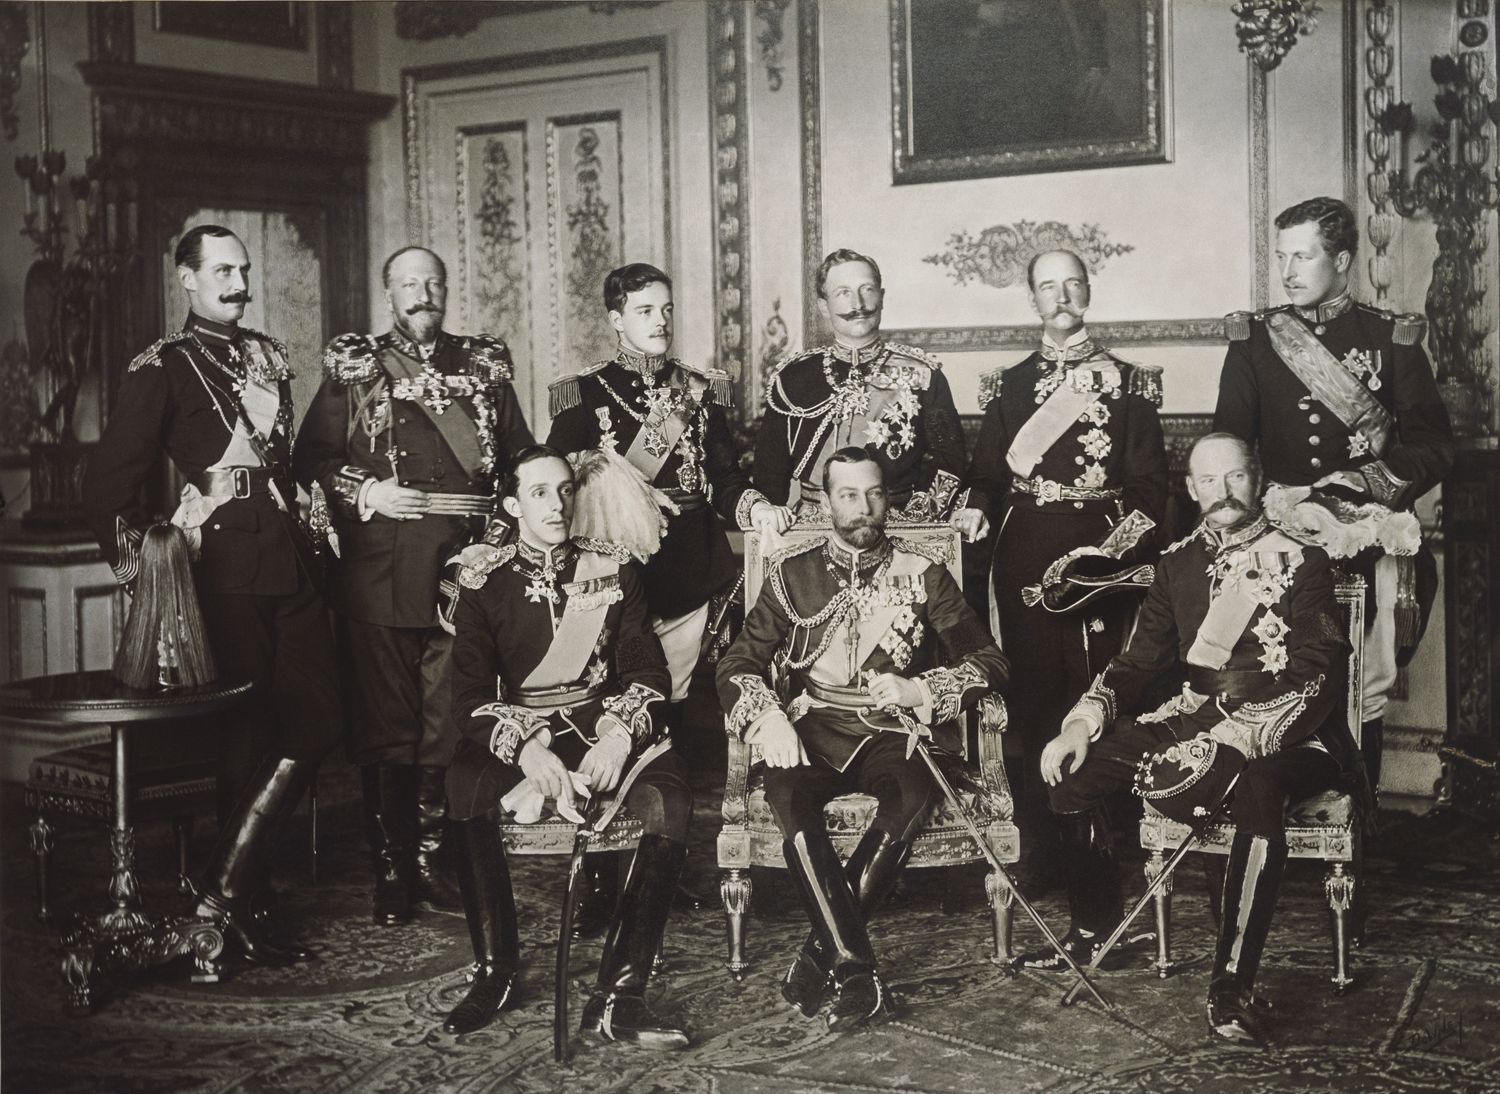 9-имата суверени на погребението на Едуард VII - Хаакон VII Норвежки, цар Фердинанд I, Мануел II, кайзер Вилхелм II на Германската Империя, Джордж I Гръцки, Албер I - Белгия, Алфонсо XIII от Испания, крал-император Джордж V и Фредерик VIII Датски